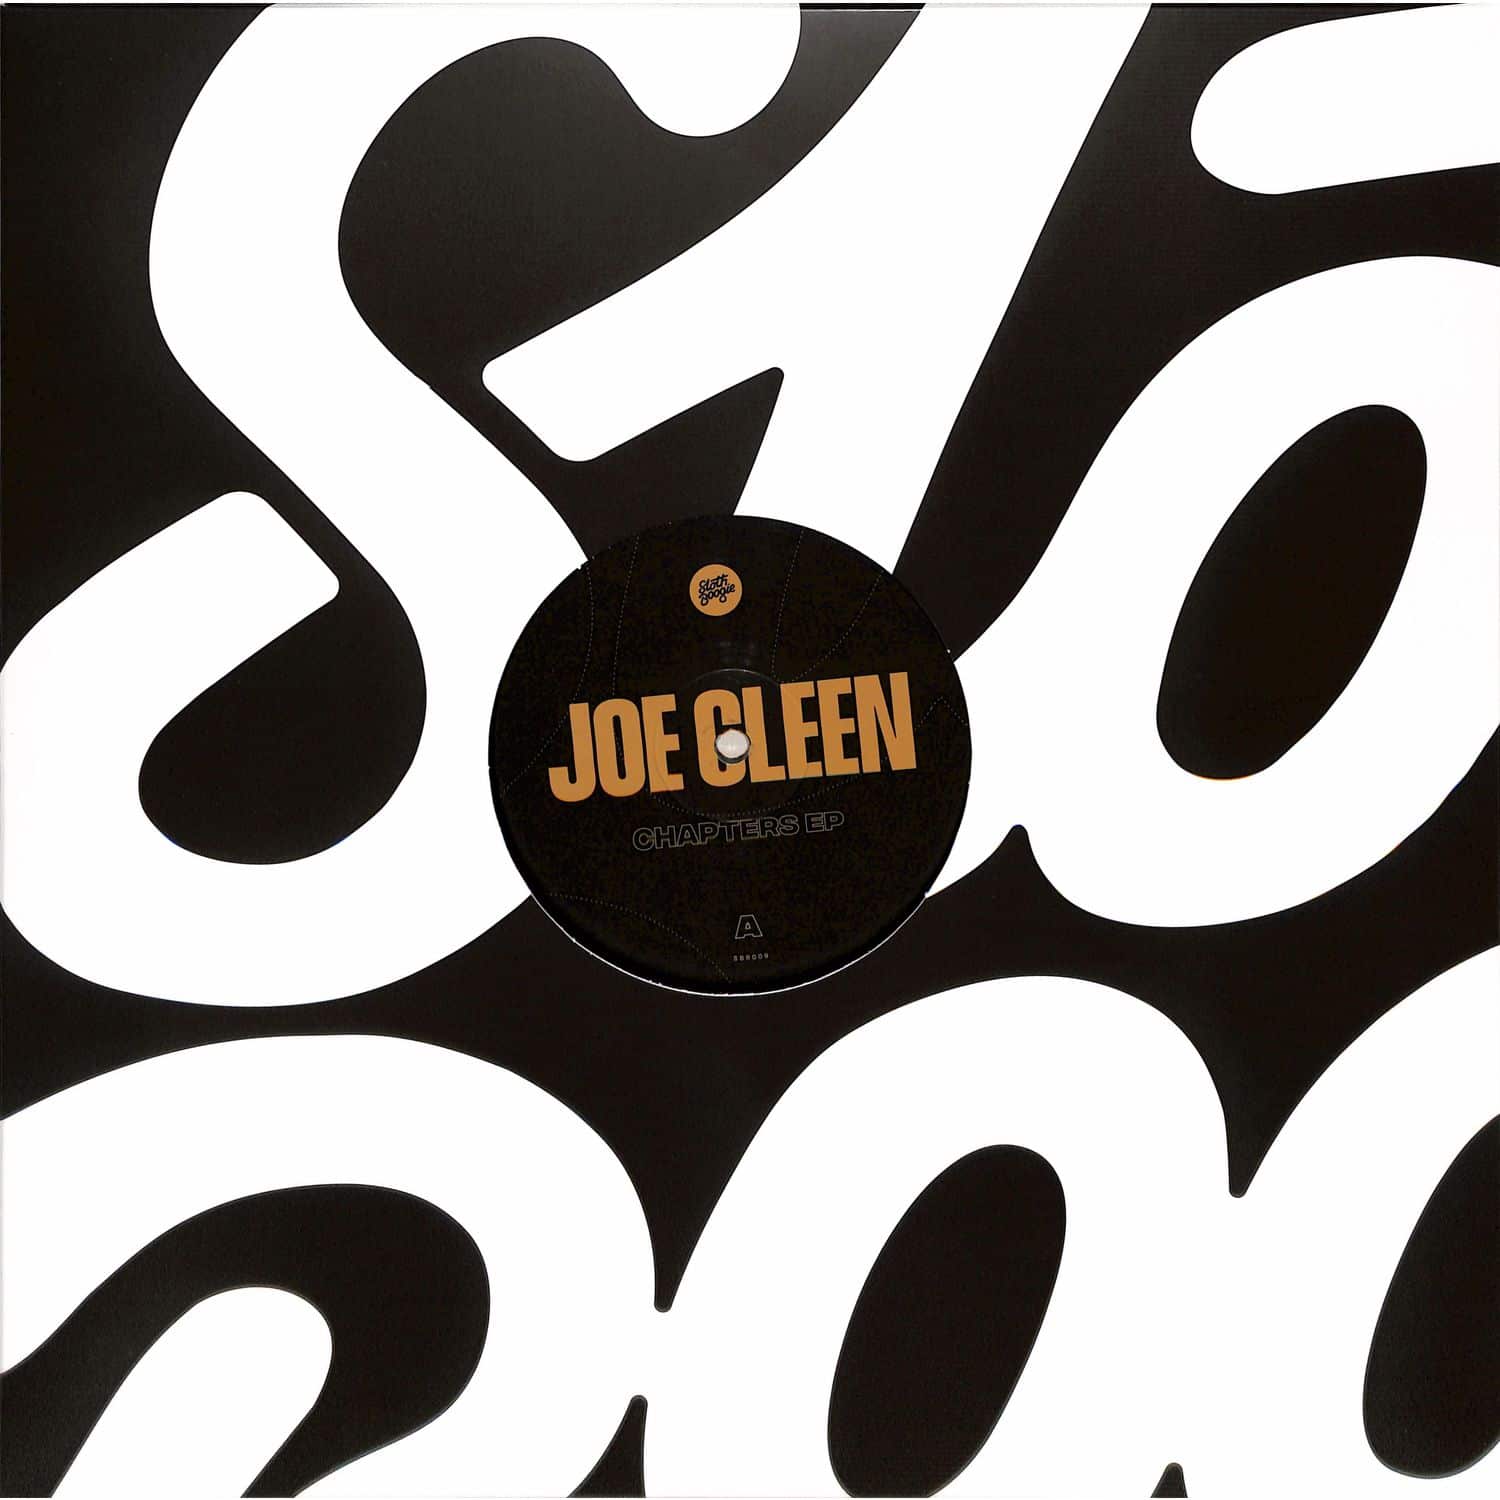 Joe Cleen - CHAPTERS EP